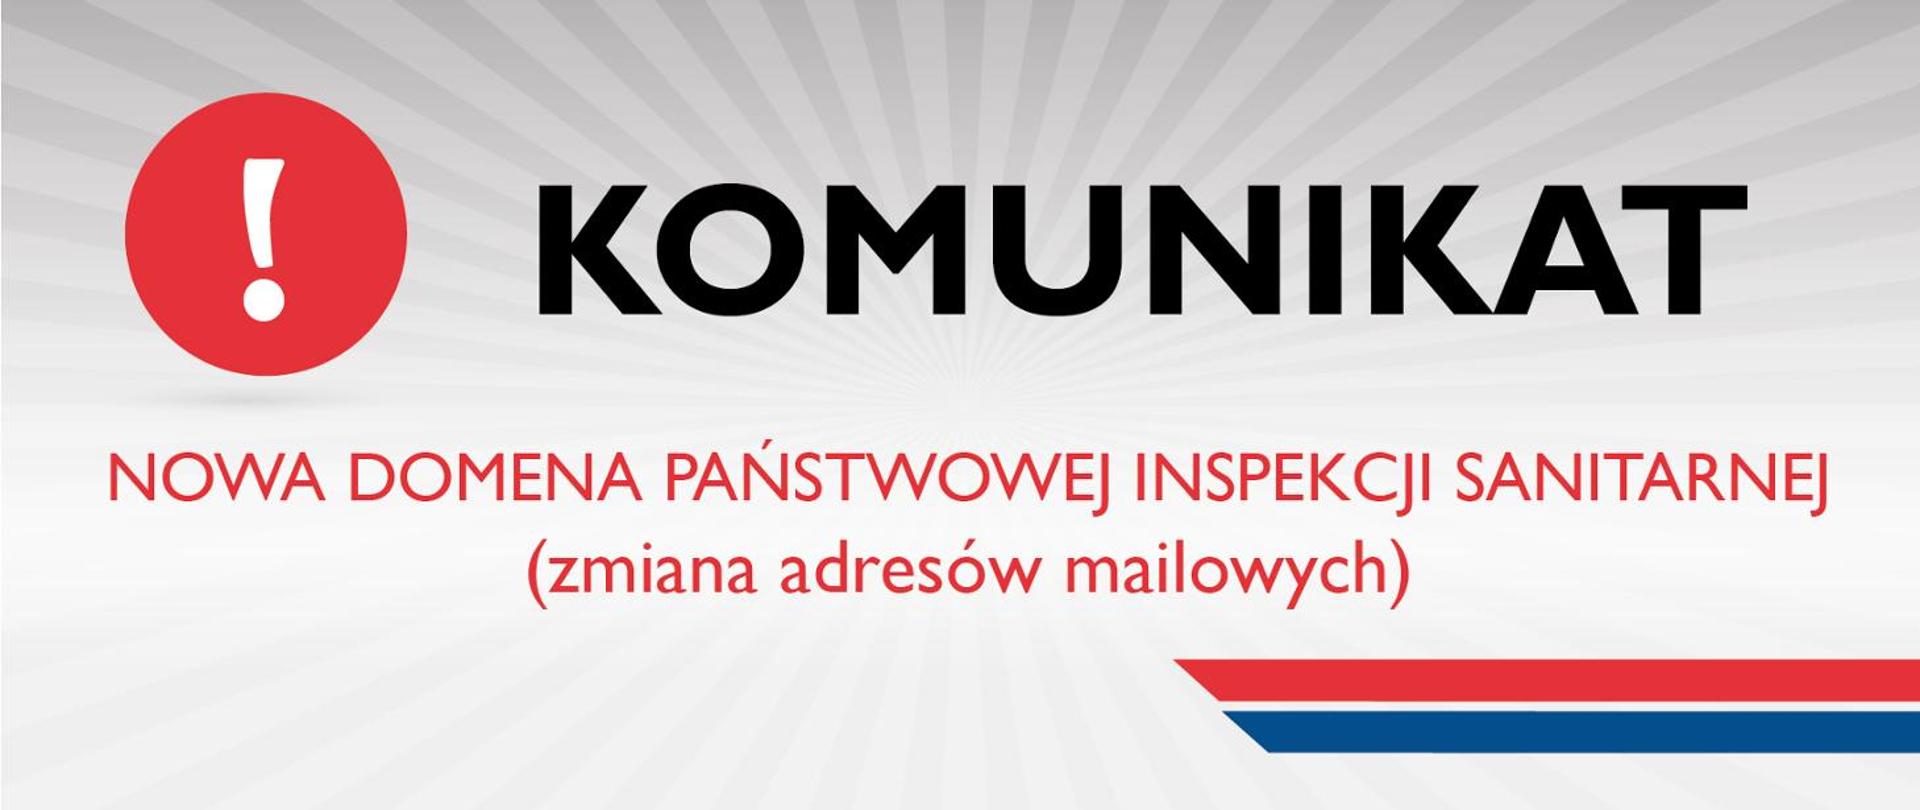 Od 14 czerwca 2022 r. nowa domena pocztowa Państwowej Inspekcji Sanitarnej: @sanepid.gov.pl. Dotychczasowe domeny zostają wyłączone i nie będą już aktywne